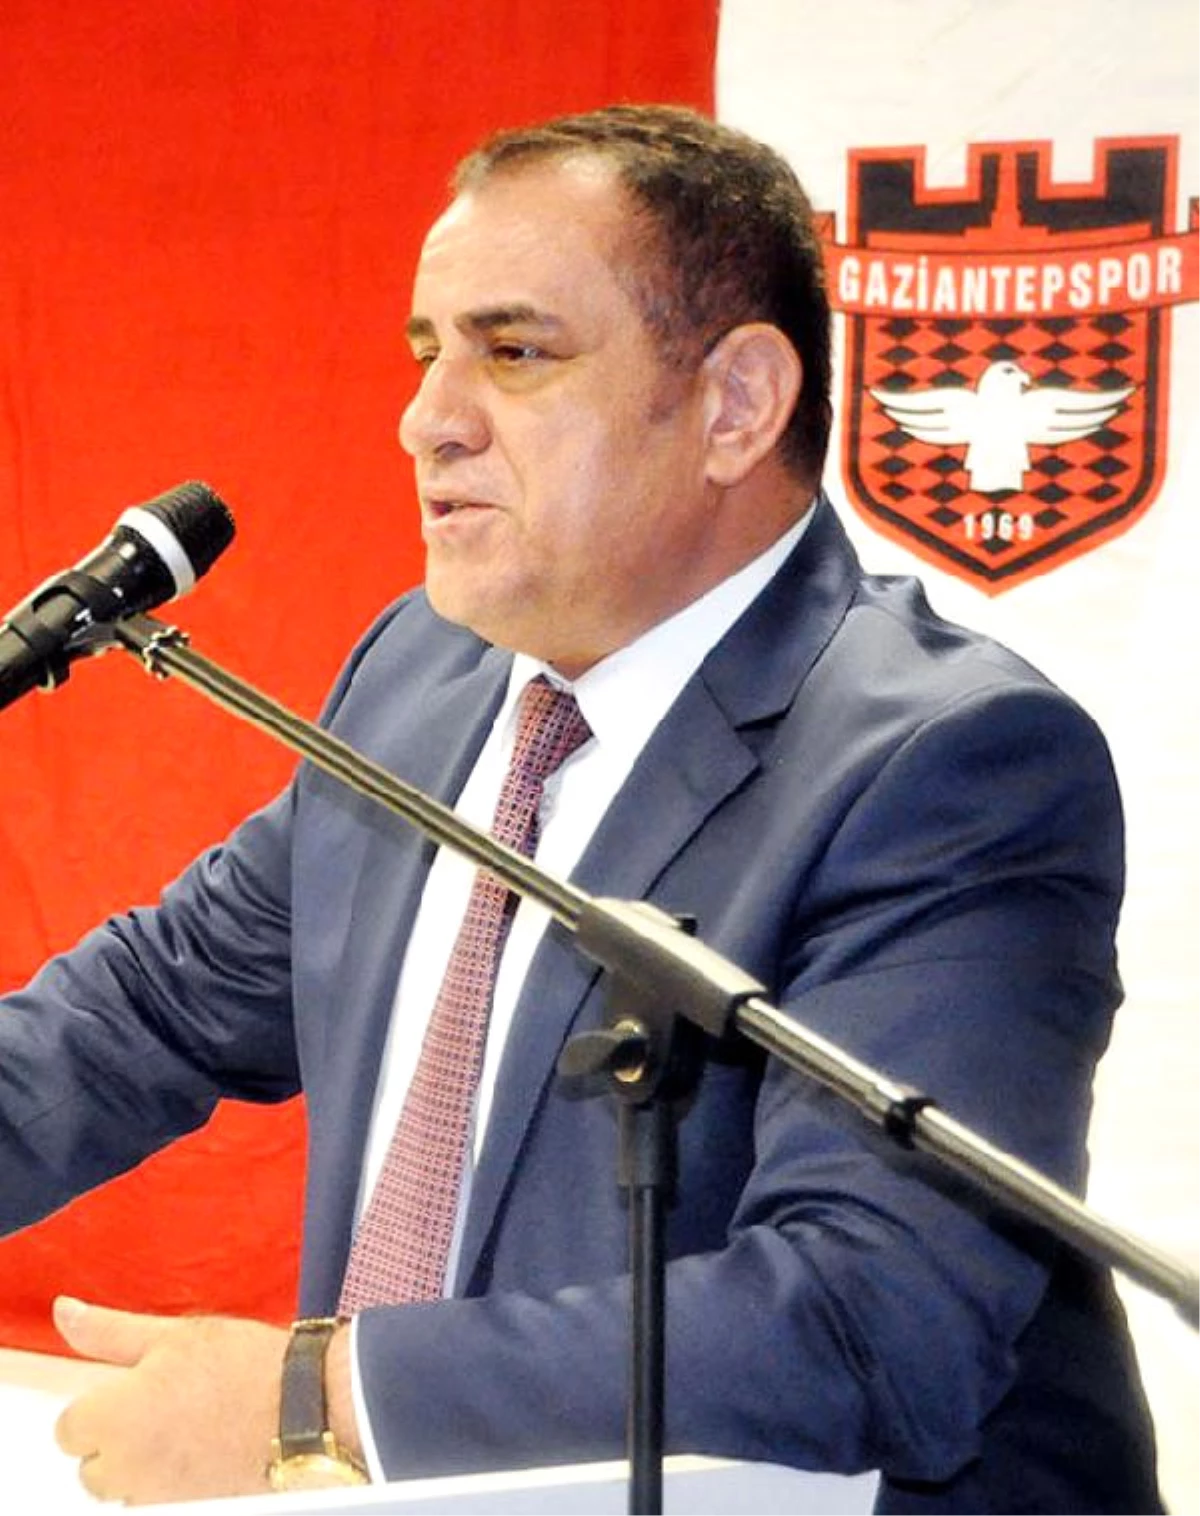 Gaziantepspor Başkanı İbrahim Kızıl İstifa Etti